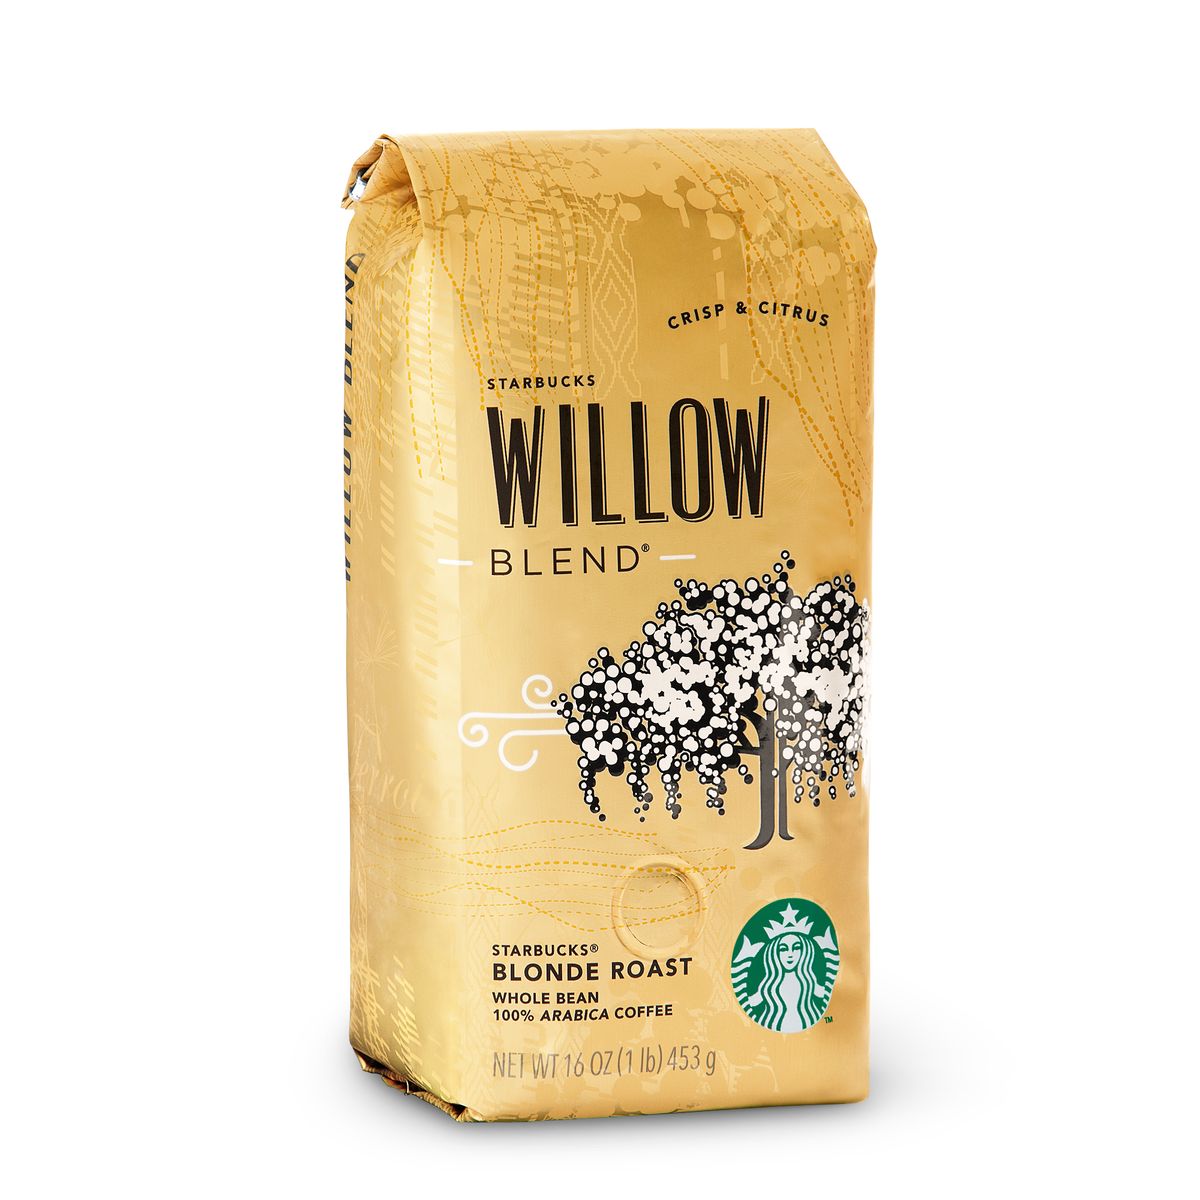 Starbucks Willow